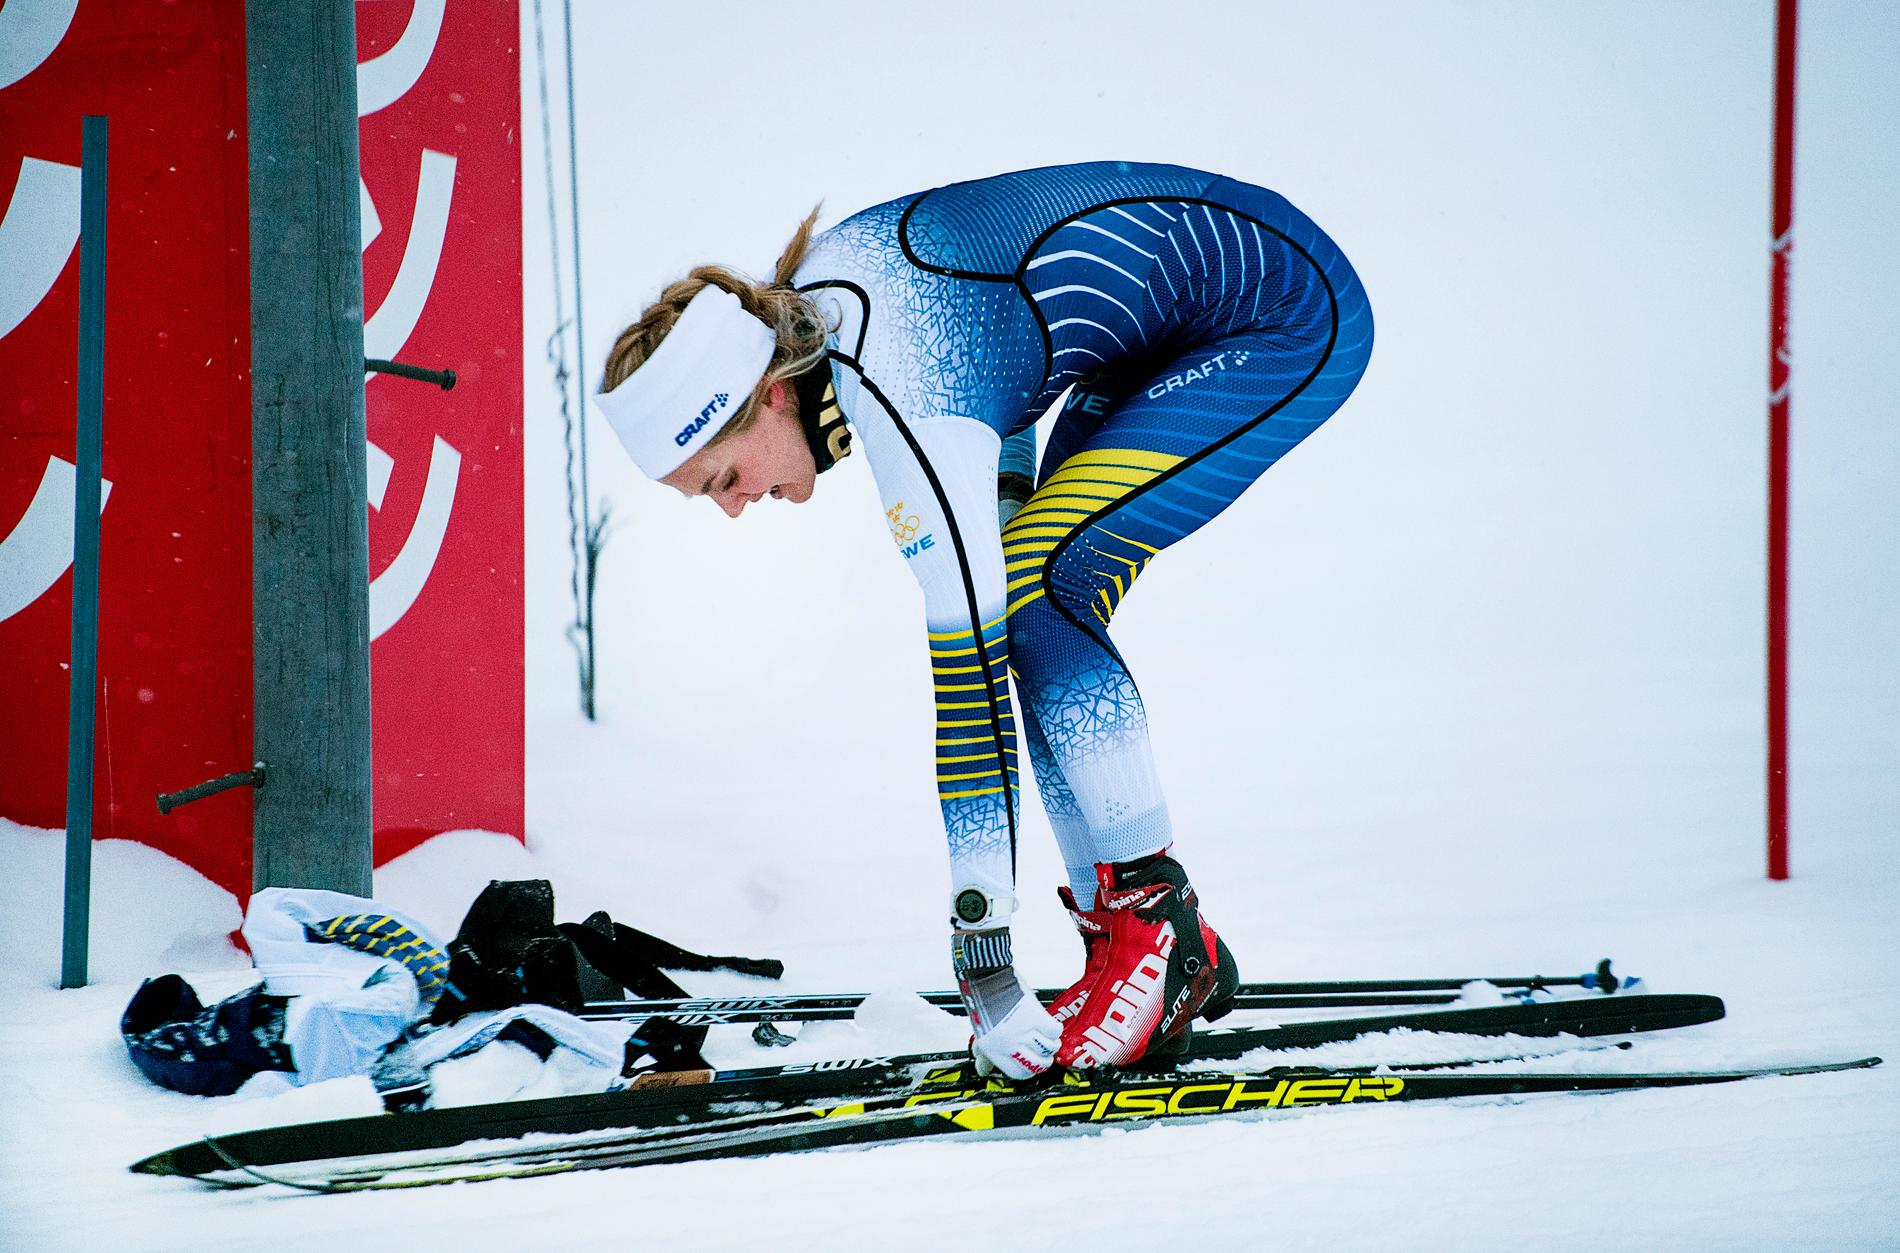 OS-premiär om tio dagar. Här genrepar Stina Nilsson och Anna Haag på distansen som väntar: skiathlon med skidbyte.